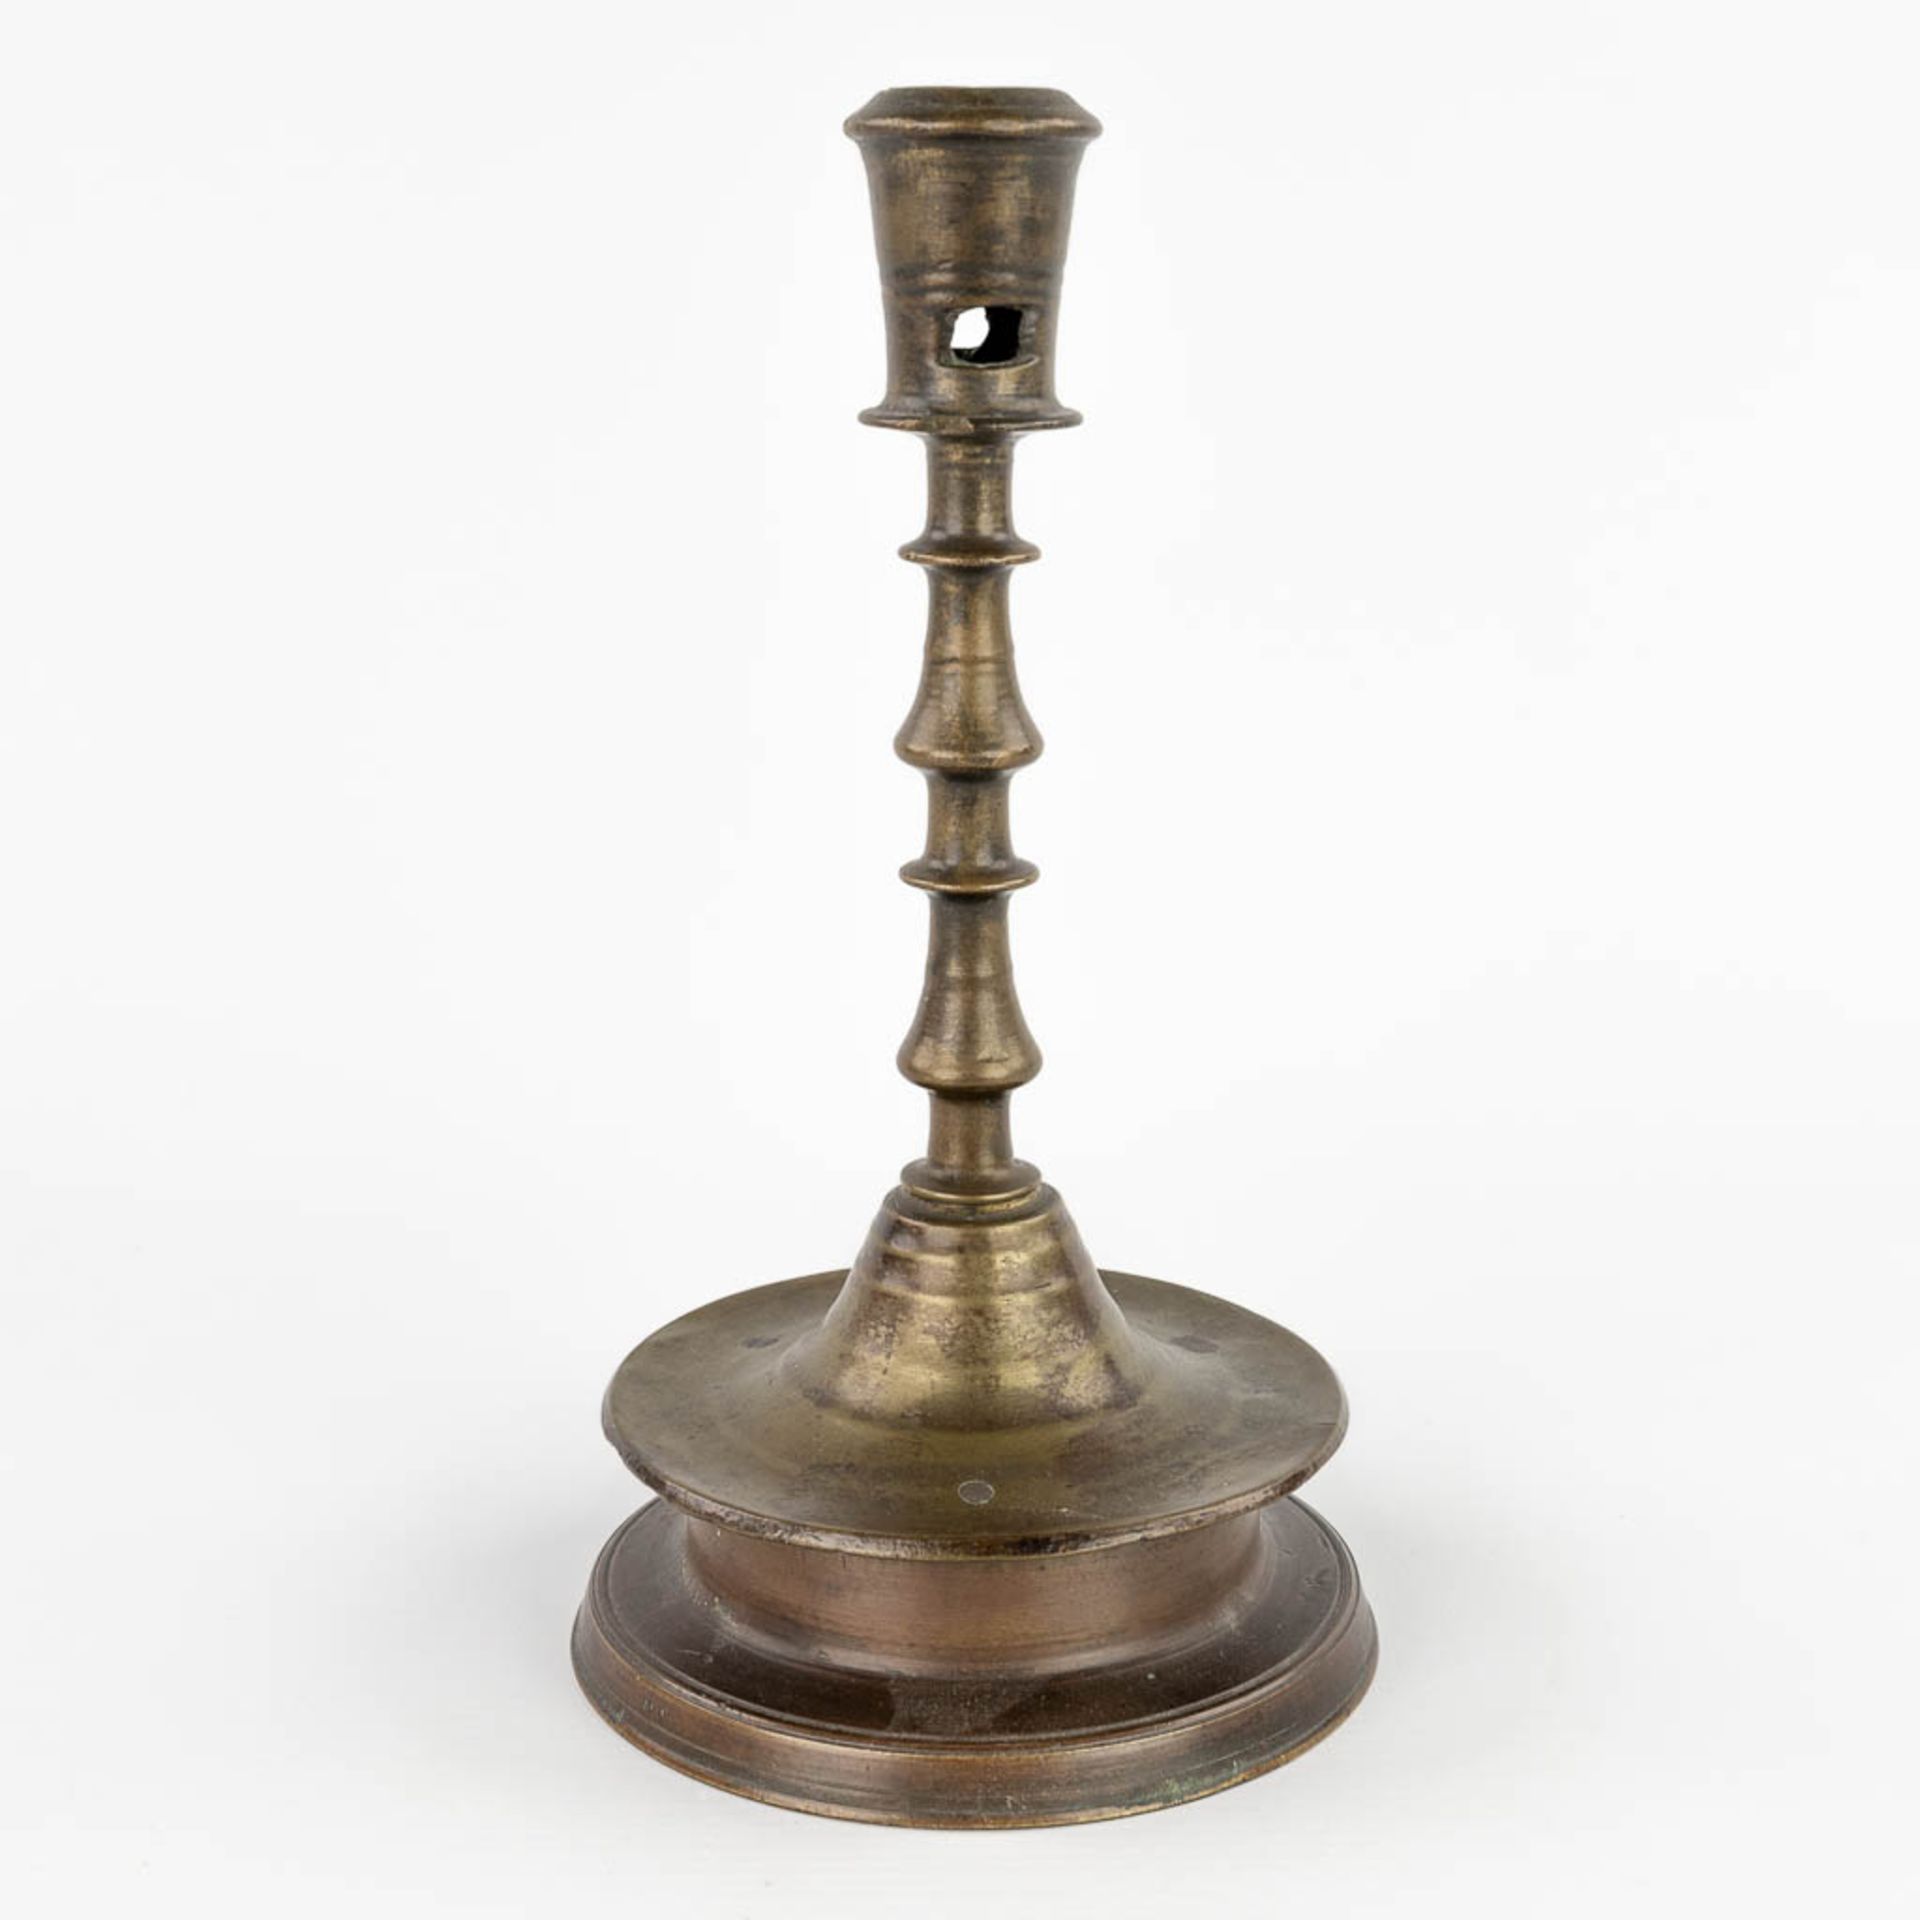 An antique Flemish or Dutch Button candlestick, bronze, 17th C (H:25 x D:13,3 cm) - Image 3 of 9